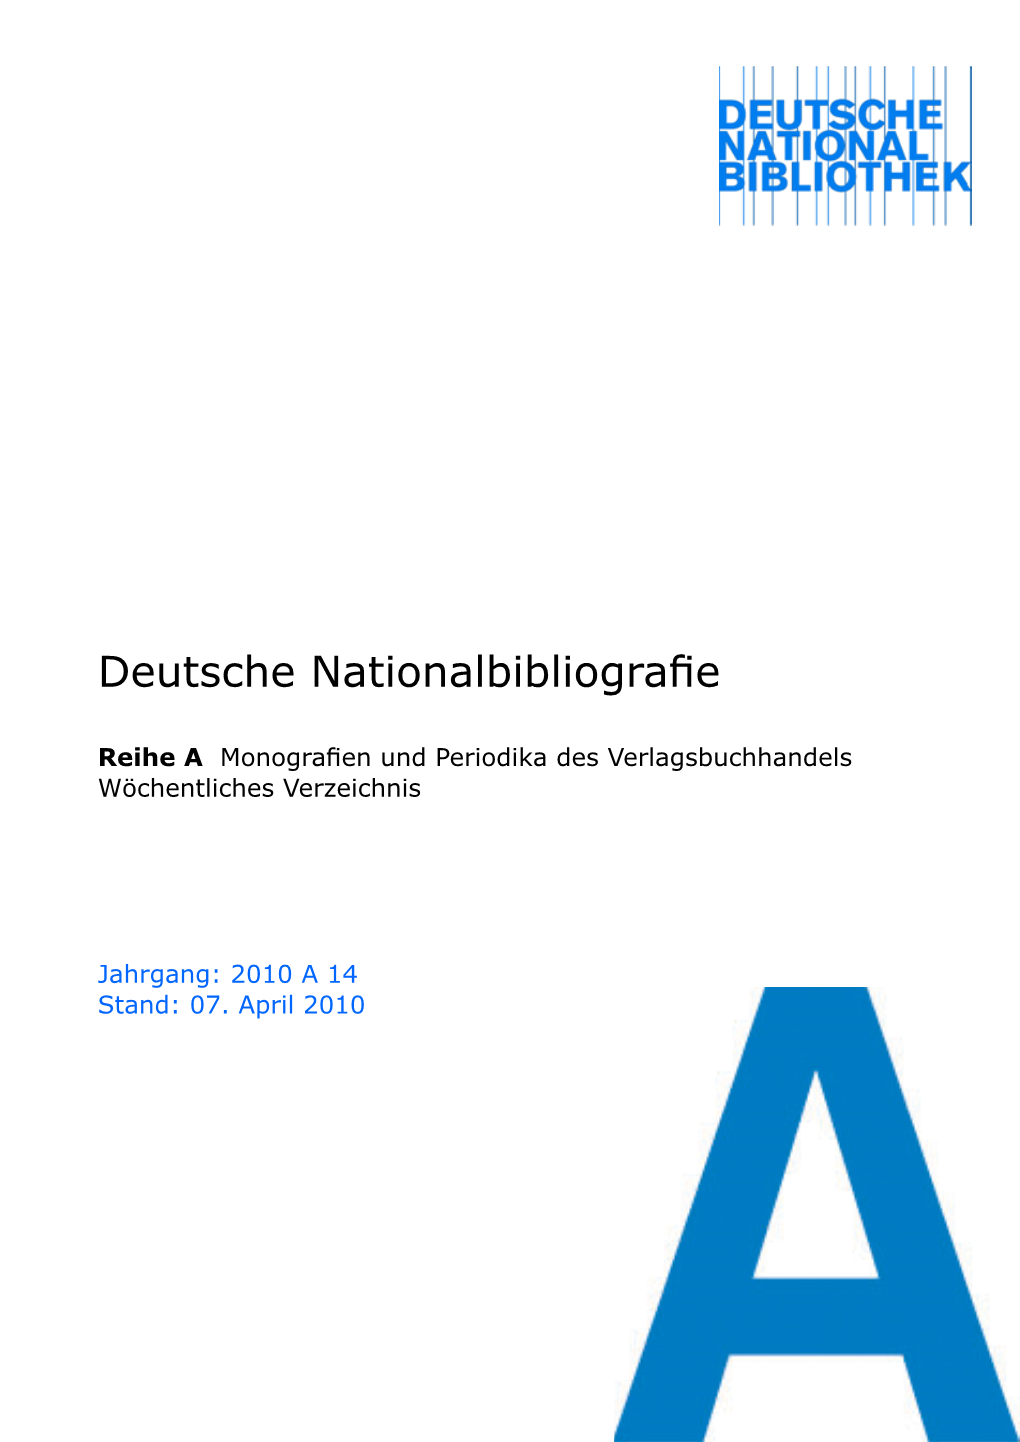 Deutsche Nationalbibliografie 2010 a 14